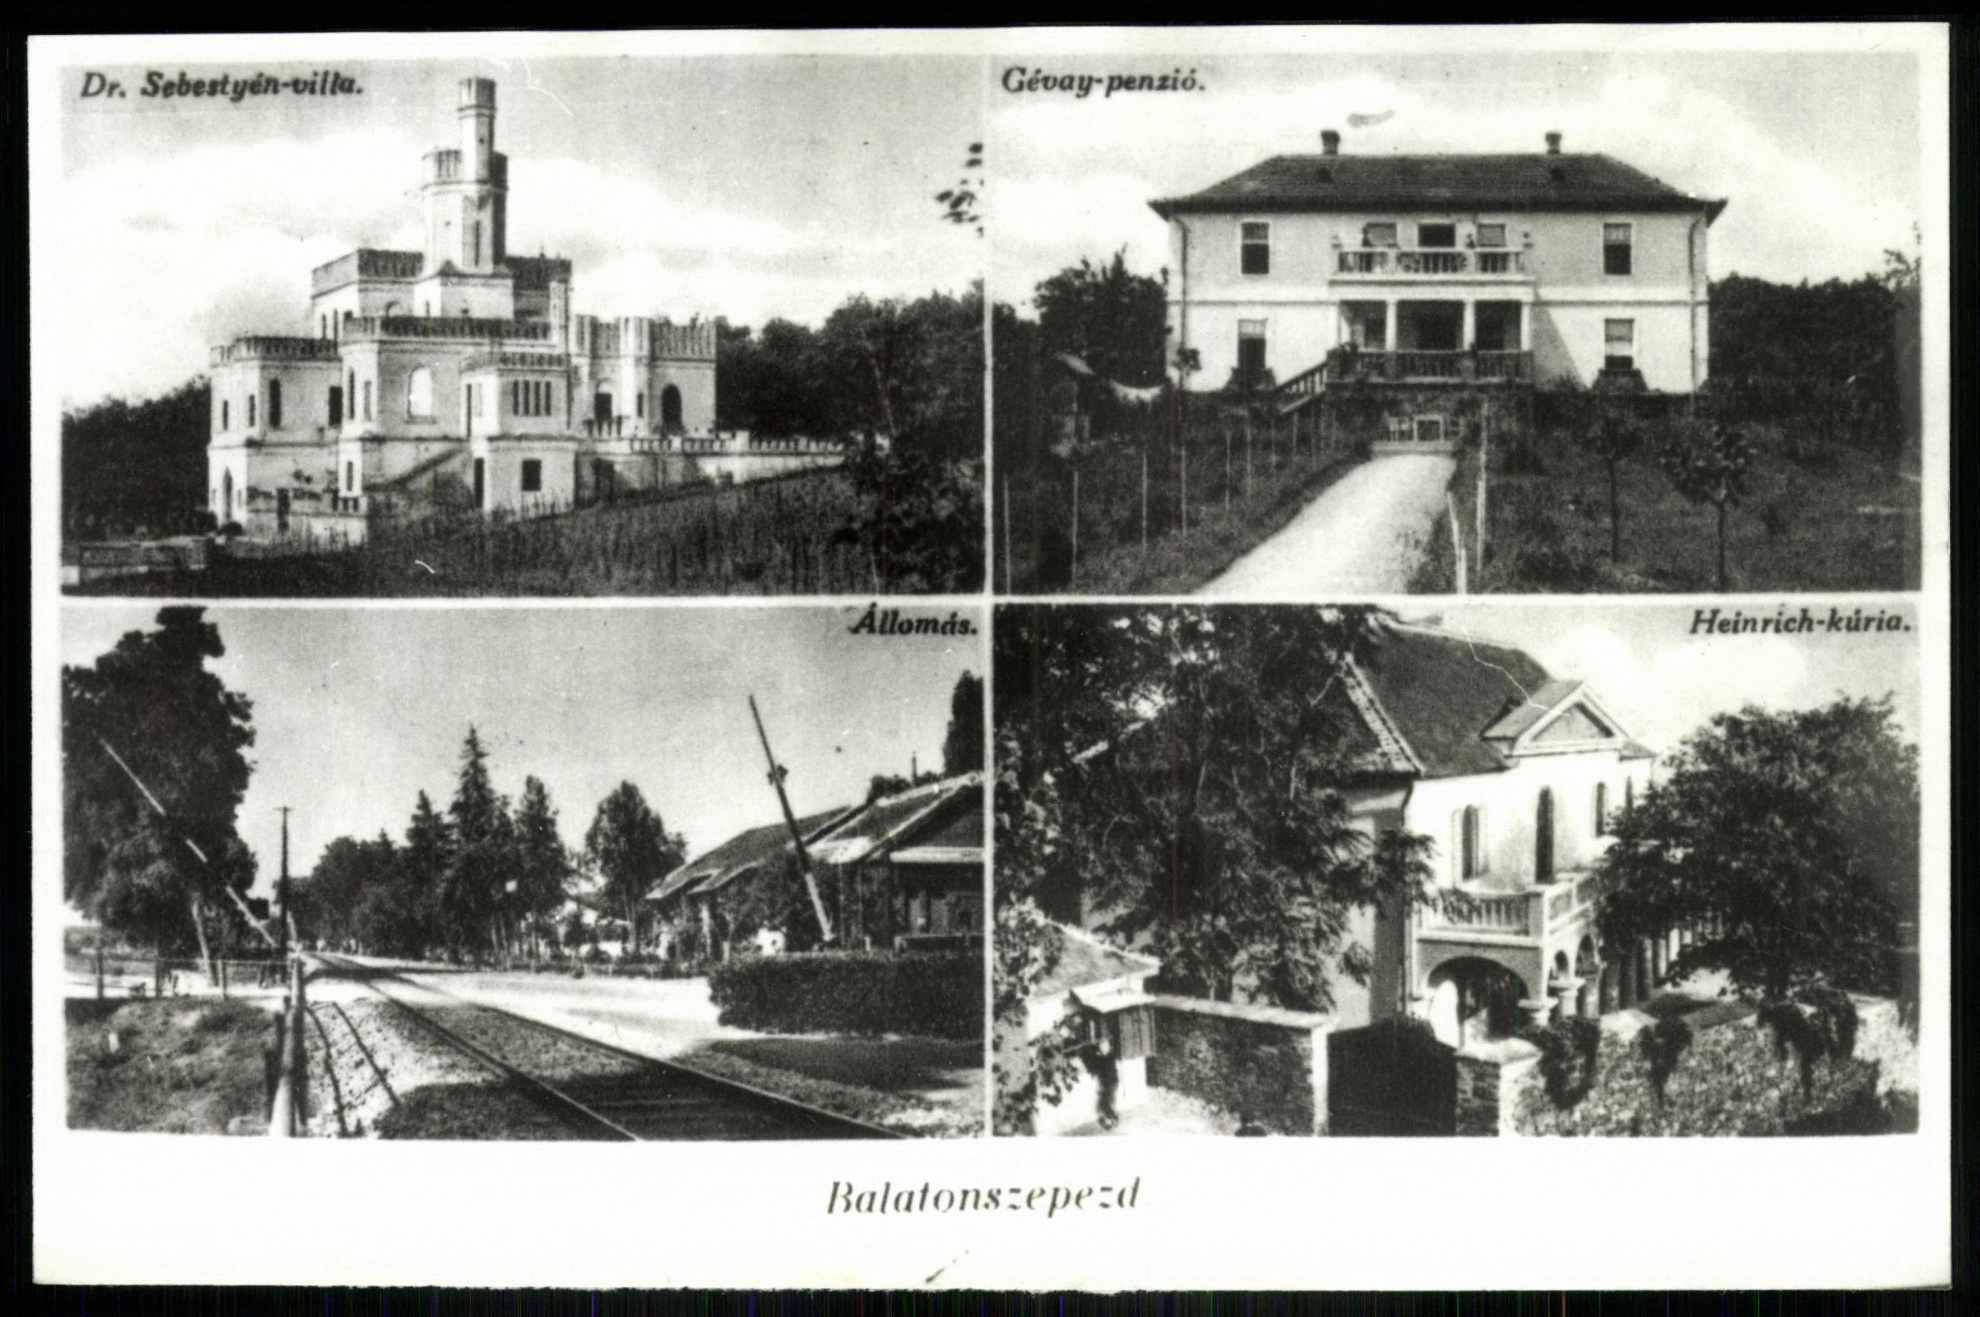 Balatonszepezd Dr. Sebestyén-villa, Gévay-penzió, Állomás, Heinrich-kúria (Magyar Kereskedelmi és Vendéglátóipari Múzeum CC BY-NC-ND)